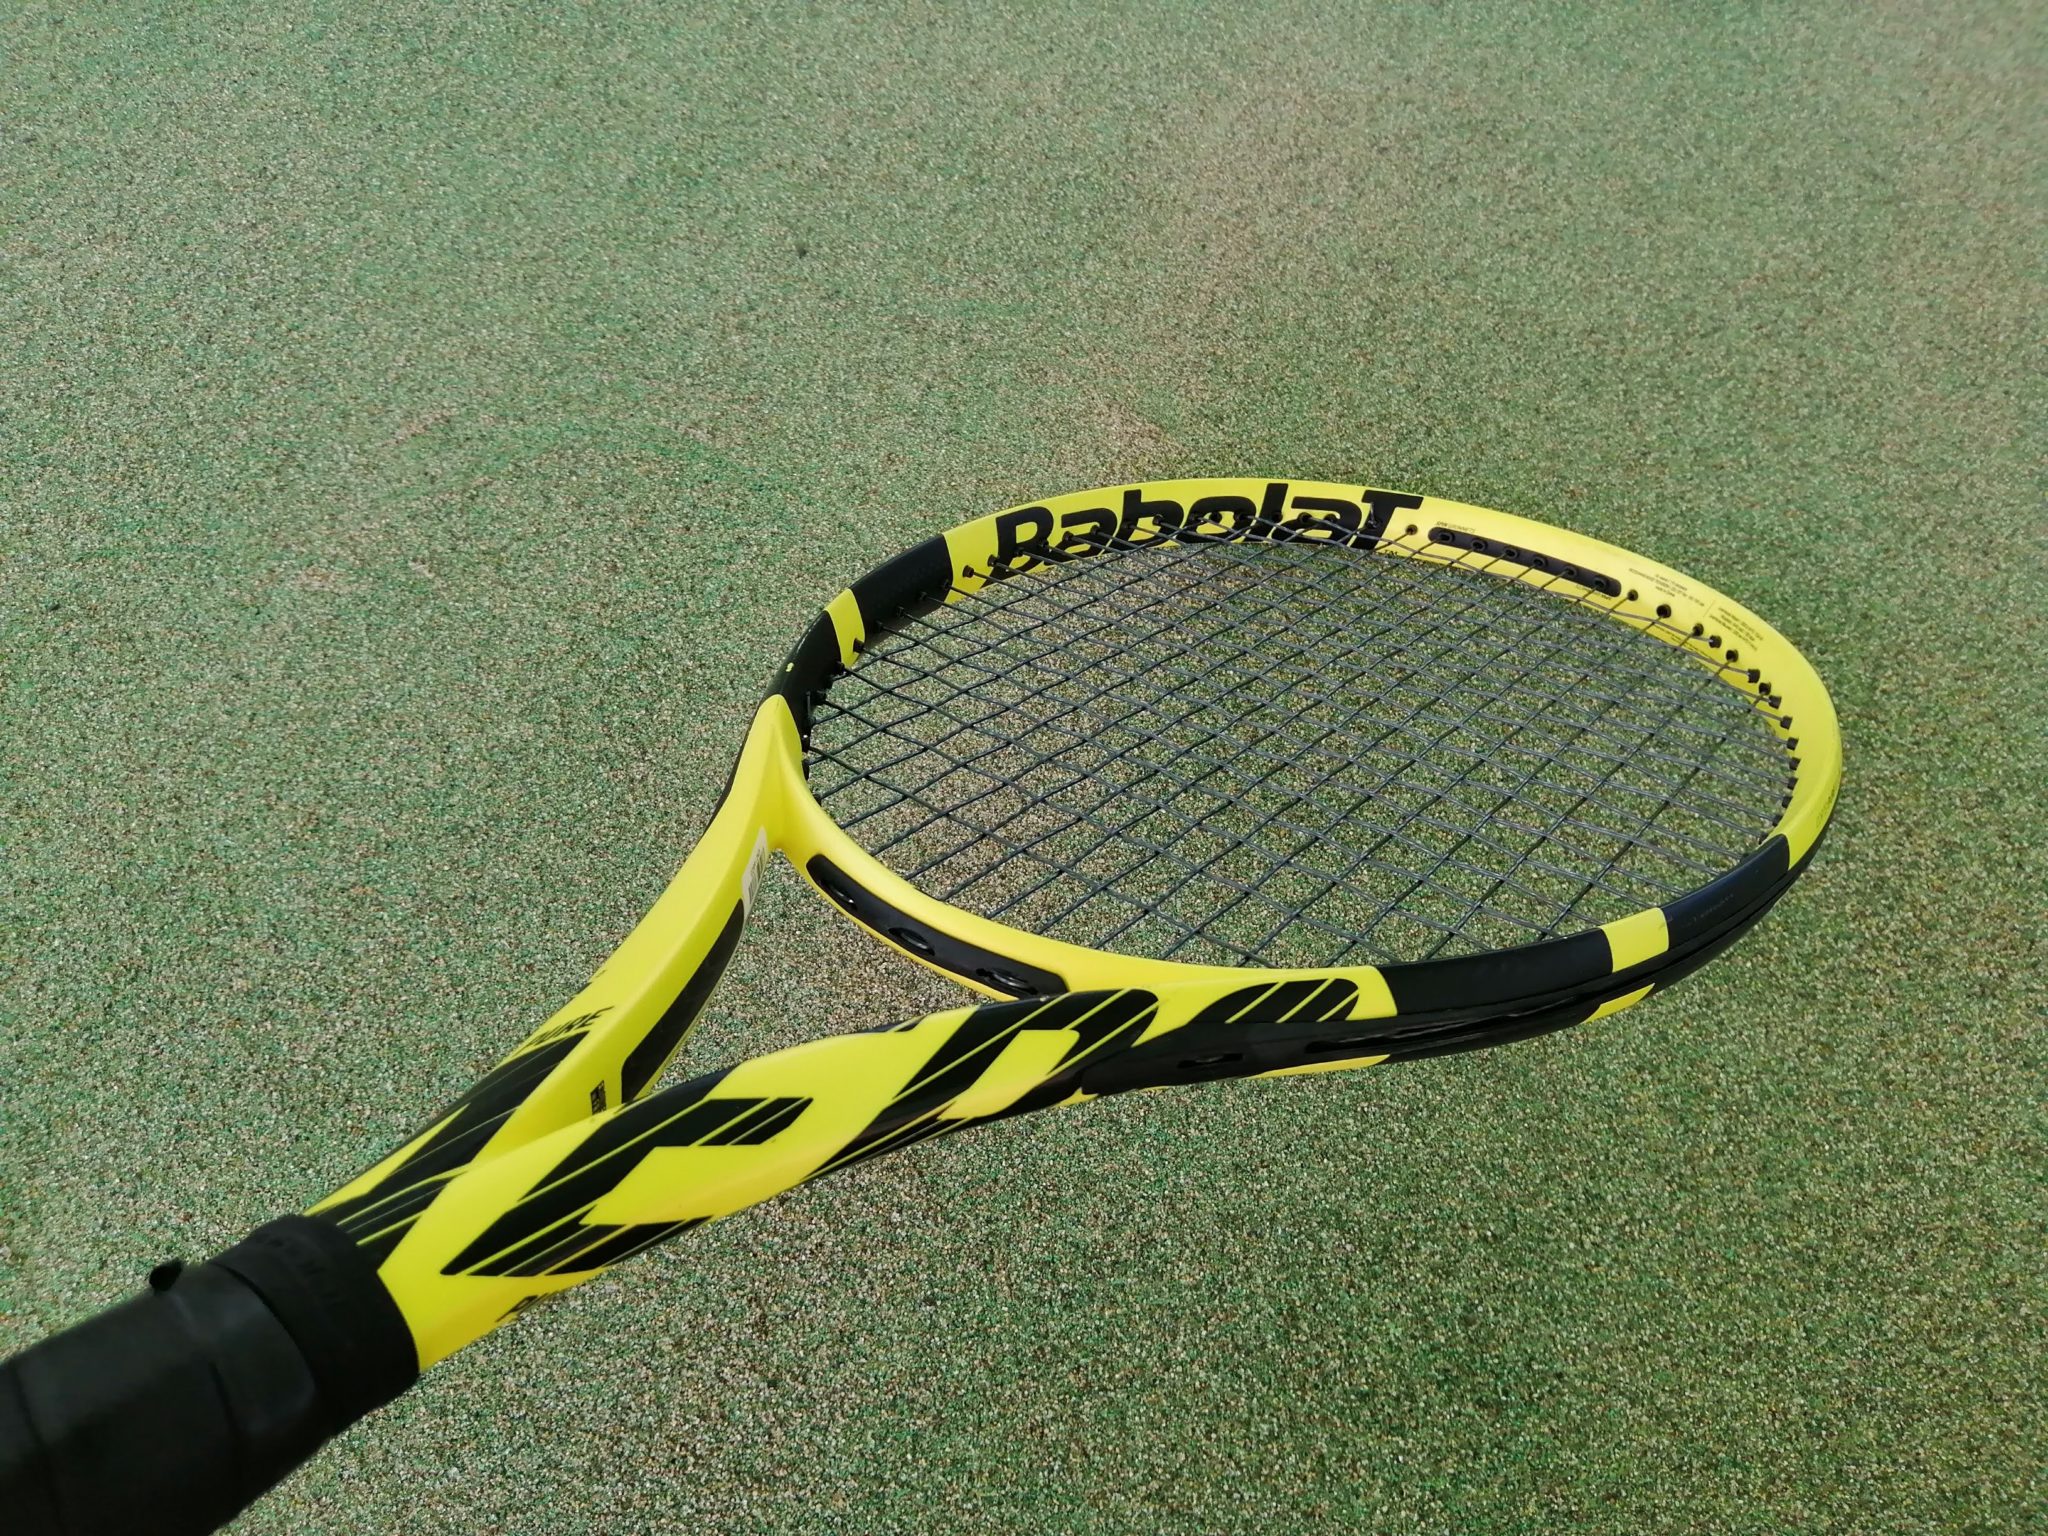 Babolat バボラ ピュアアエロ98 pureaero 98 テニスラケット - テニス